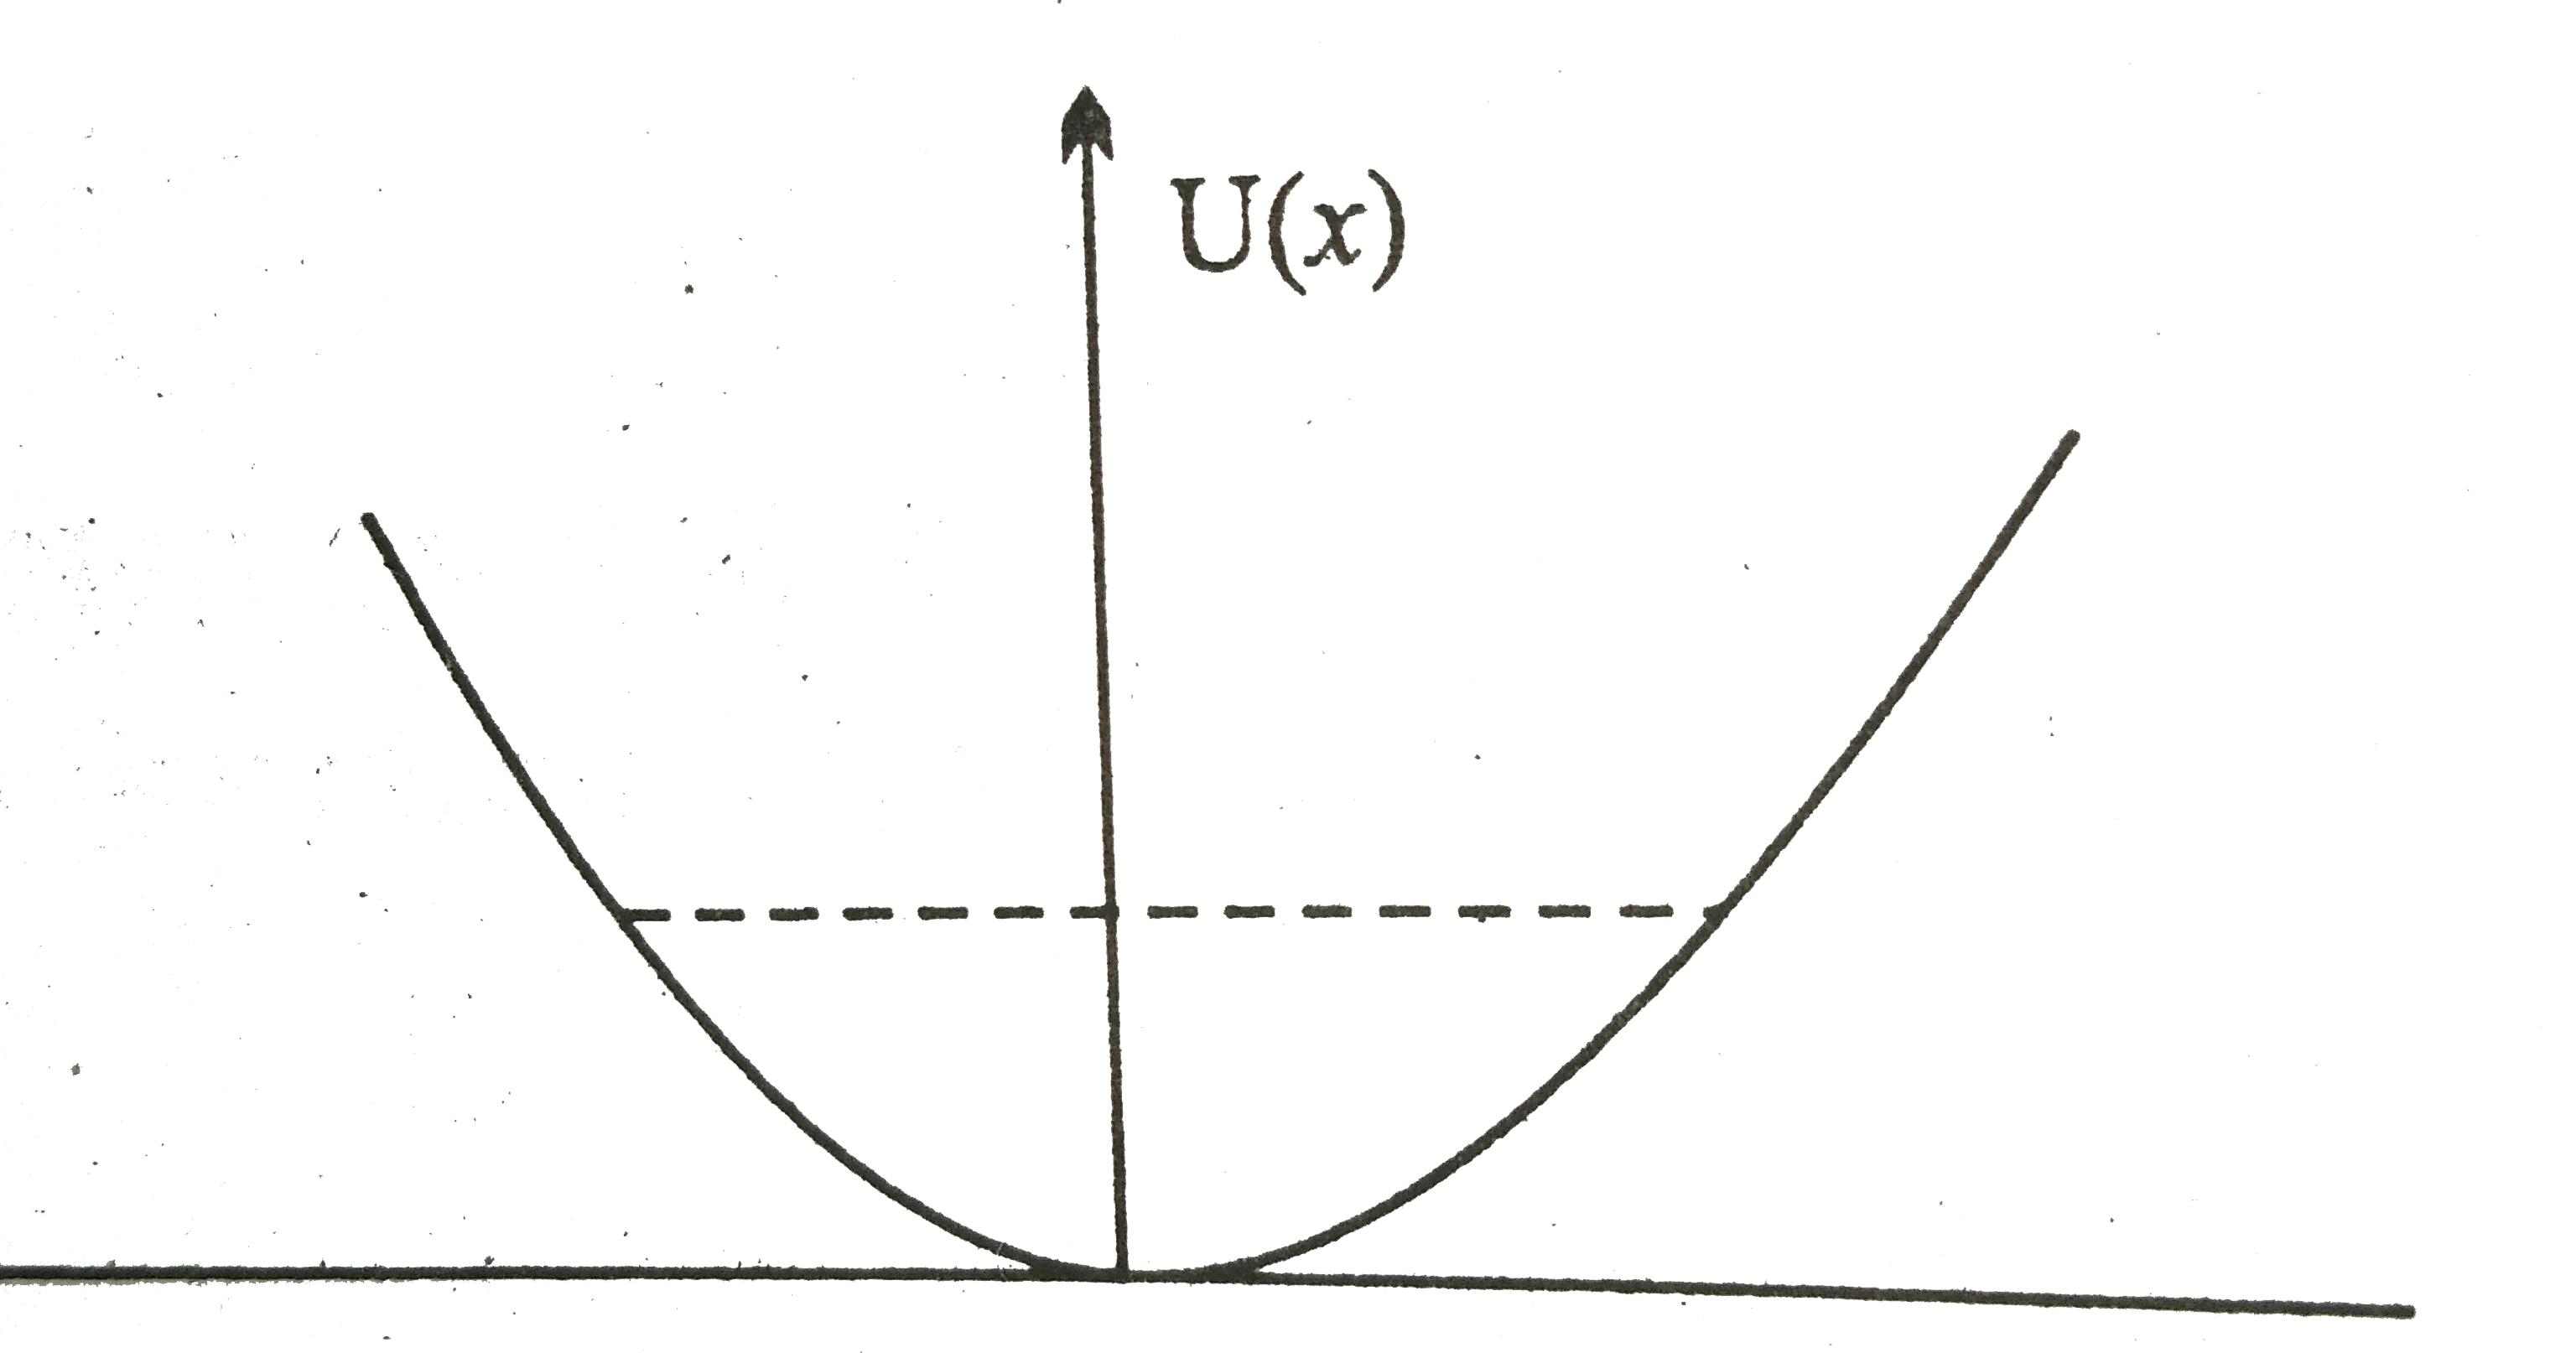 रेखीय सरल आवर्त गति कर रहे किसी कण का स्थितिज ऊर्जा फलन U(x)=kx^(2)//2 है, जहाँ k दोलक का बल नियतांक है । k=0.5Nm^(-1)  के लिए U(x) व x के मध्य ग्राफ चित्र में दिखाया गया है । यह दिखाइए कि इस विभव के अंतर्गत गतिमान कुल 1J ऊर्जा वाले कण को अवश्य ही  'वापिस आना' चाहिए जब यह x=pm2m पर पहुँचता है ।